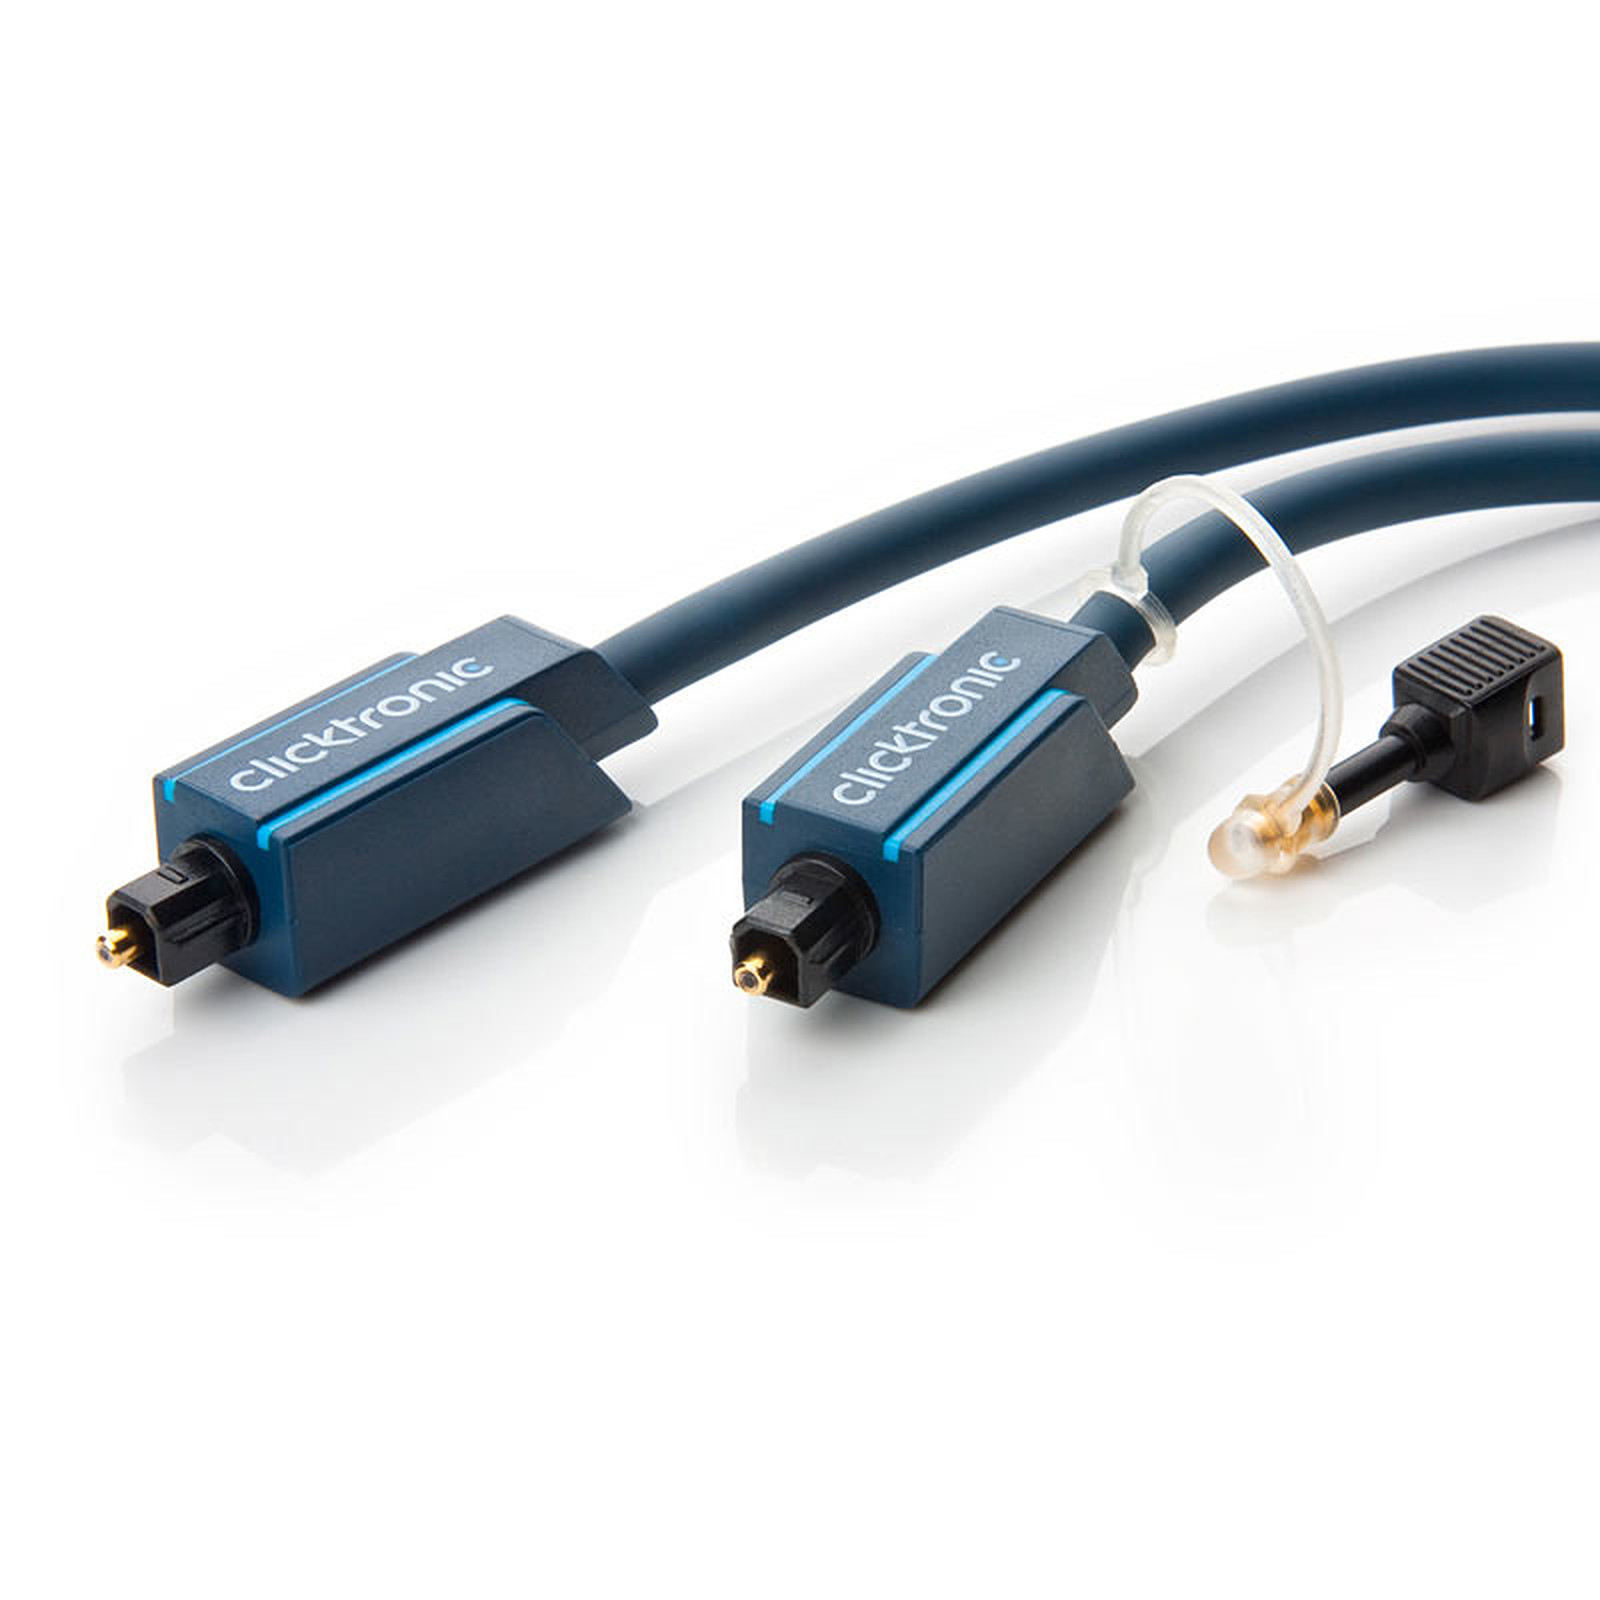 Clicktronic cable Toslink (3 mètres) - Cable audio numerique Clicktronic